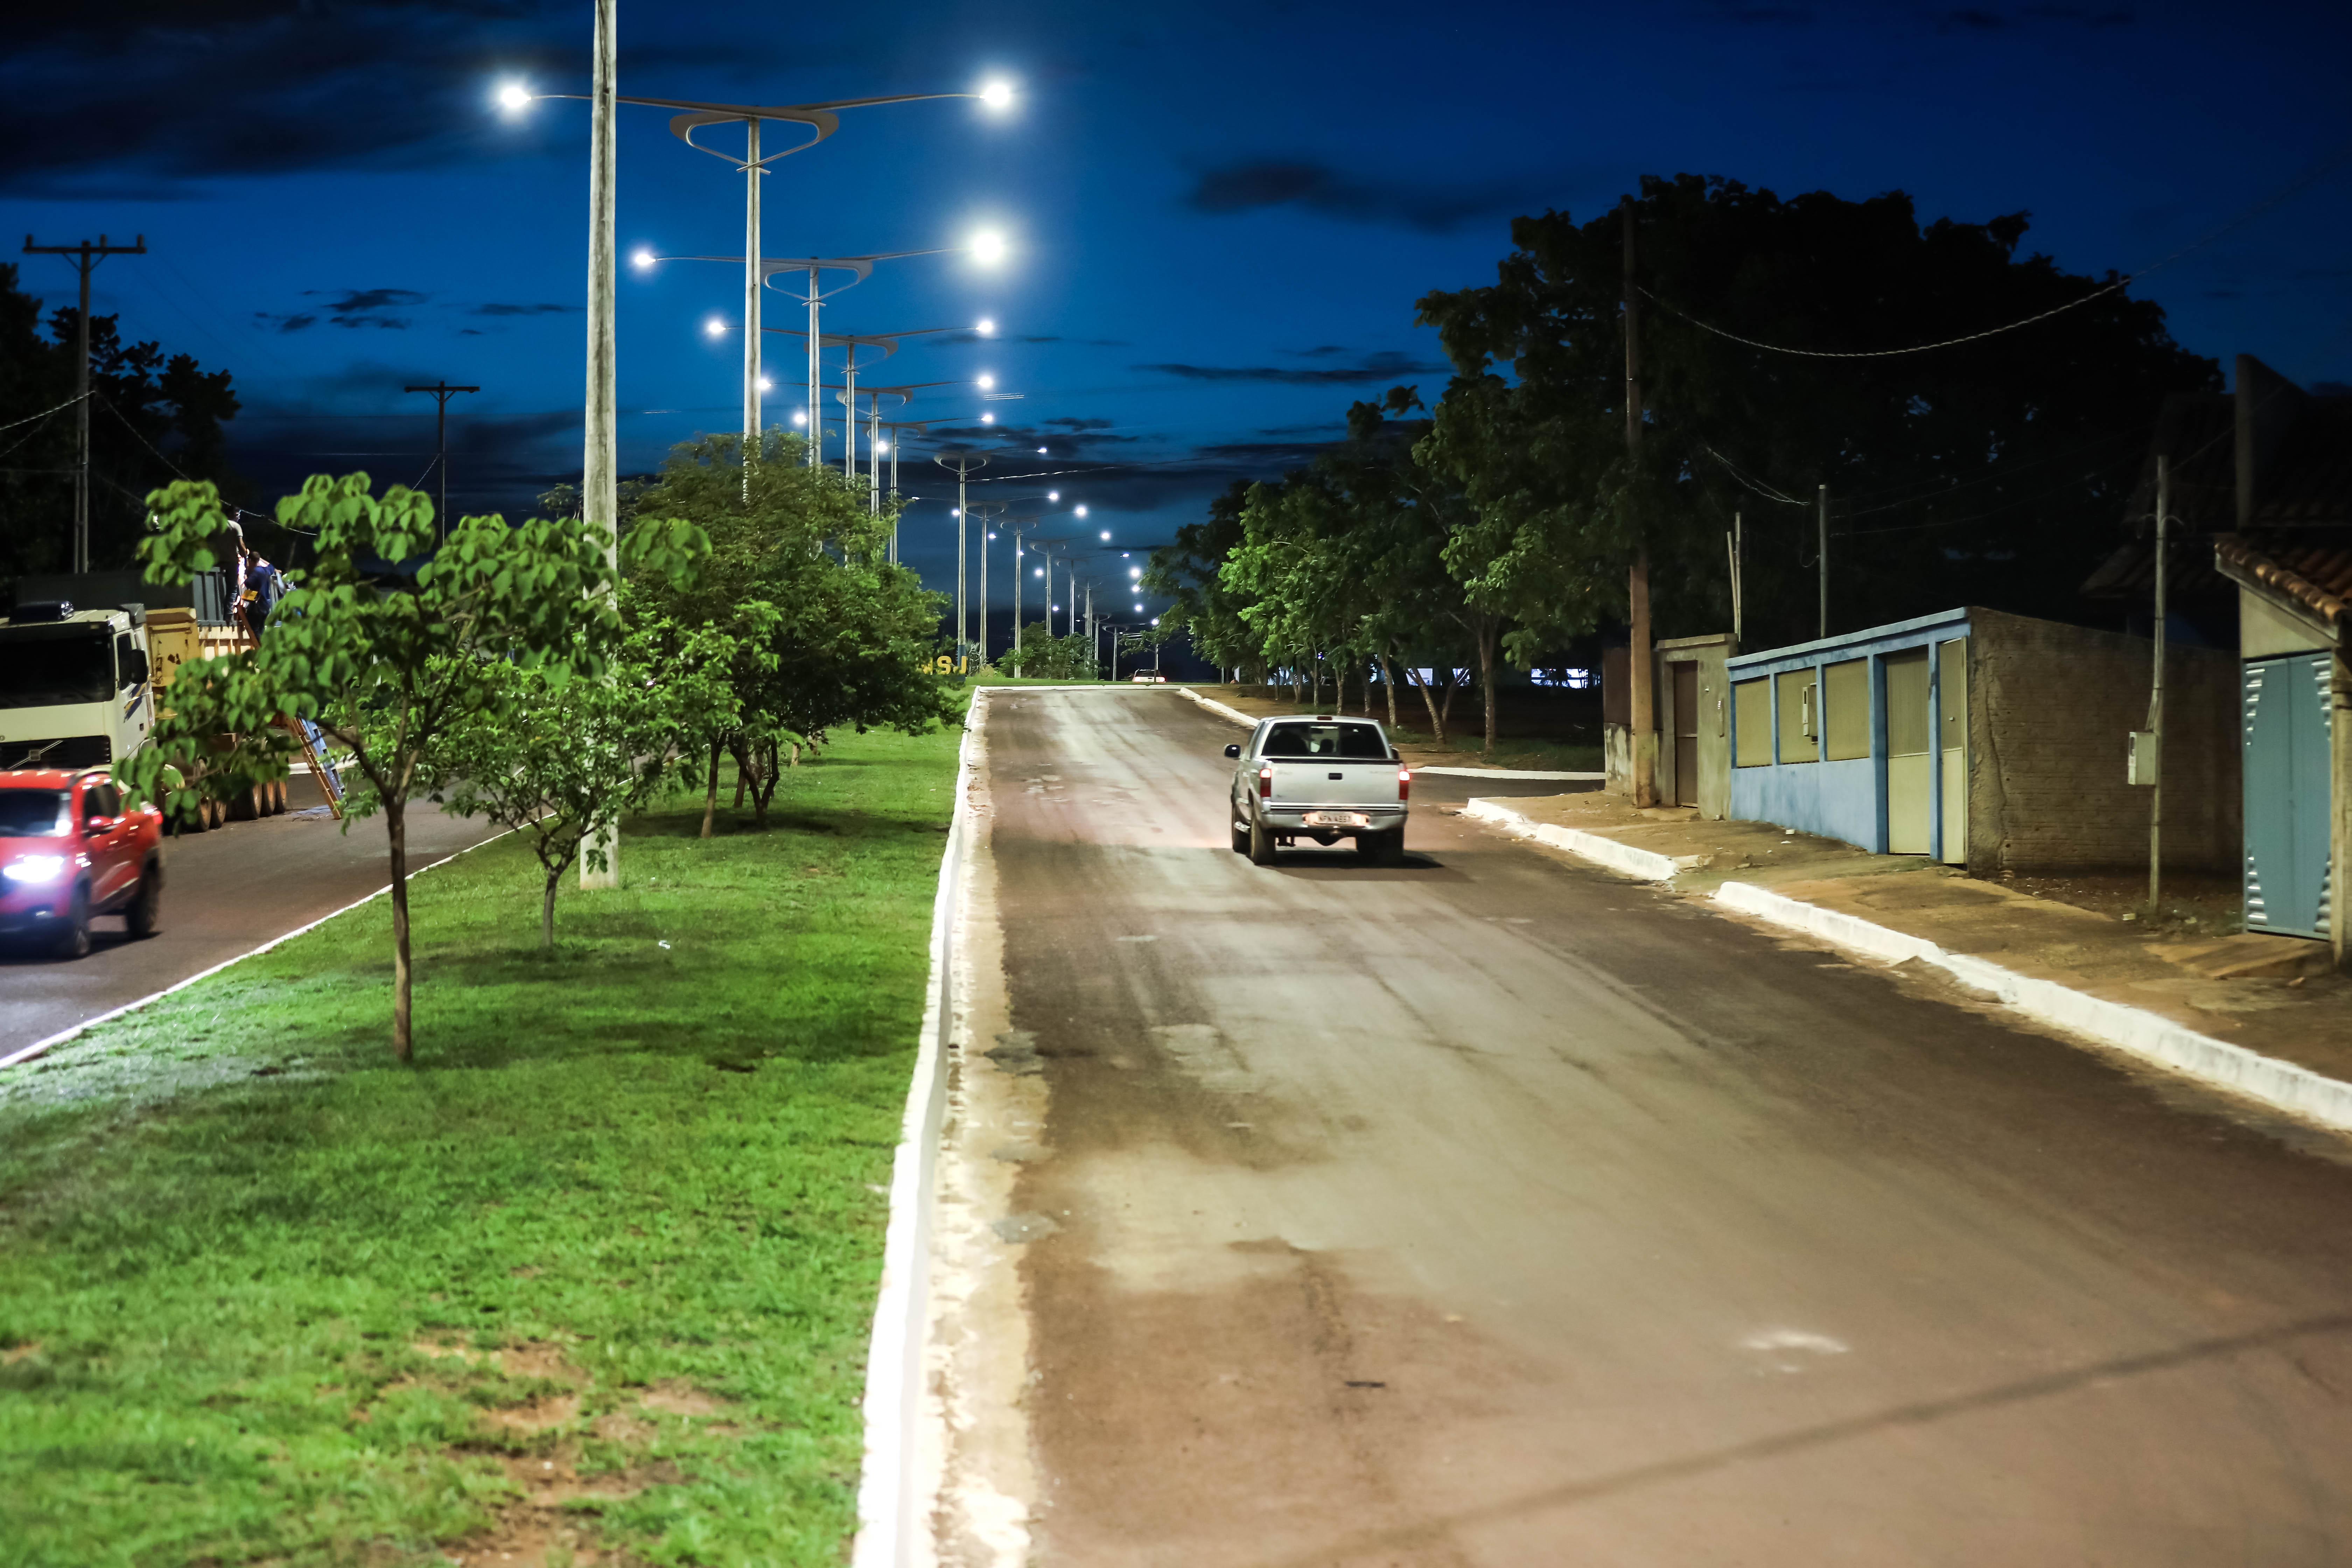 MT Iluminado melhora a qualidade de vida em municípios da região Norte do Estado